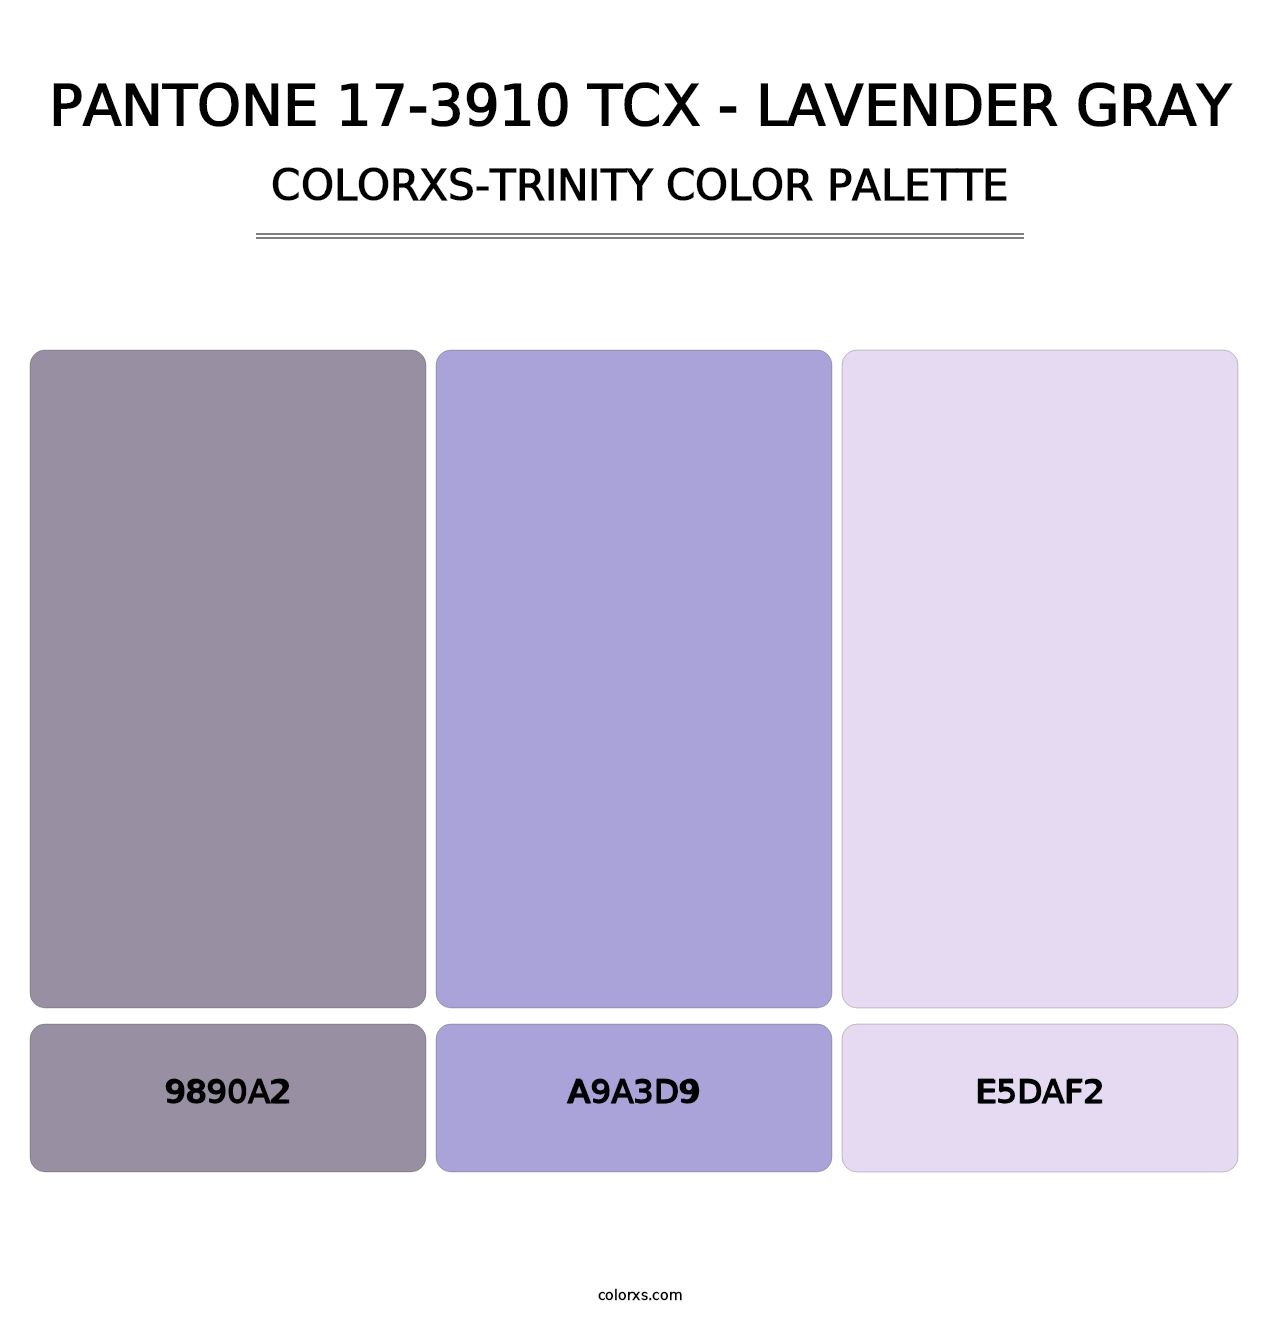 PANTONE 17-3910 TCX - Lavender Gray - Colorxs Trinity Palette